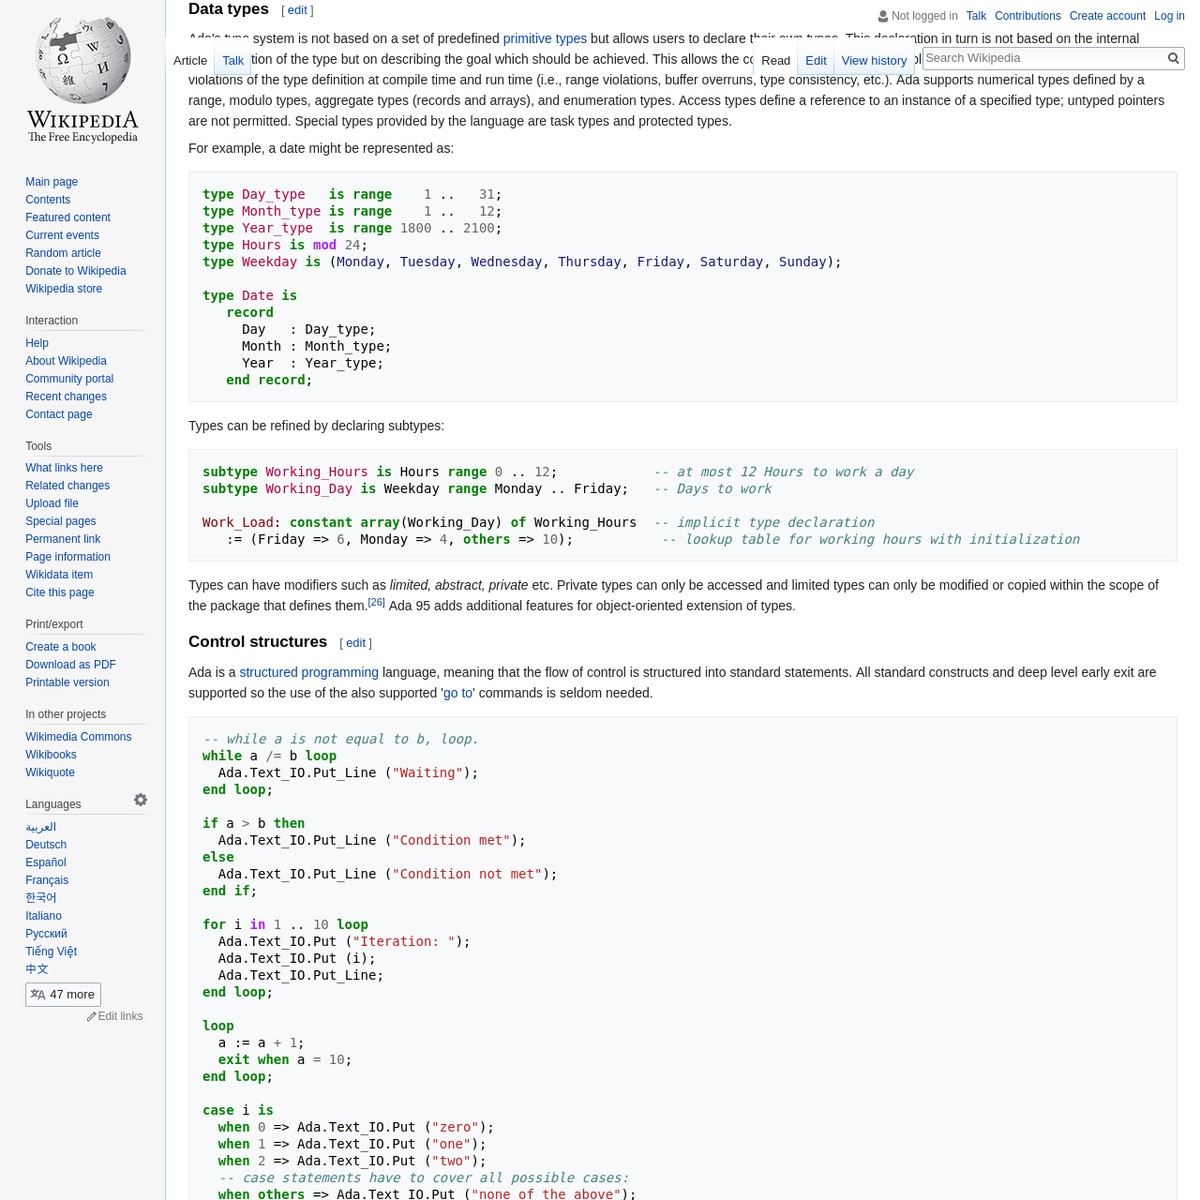 Python (programming language) - Wikipedia